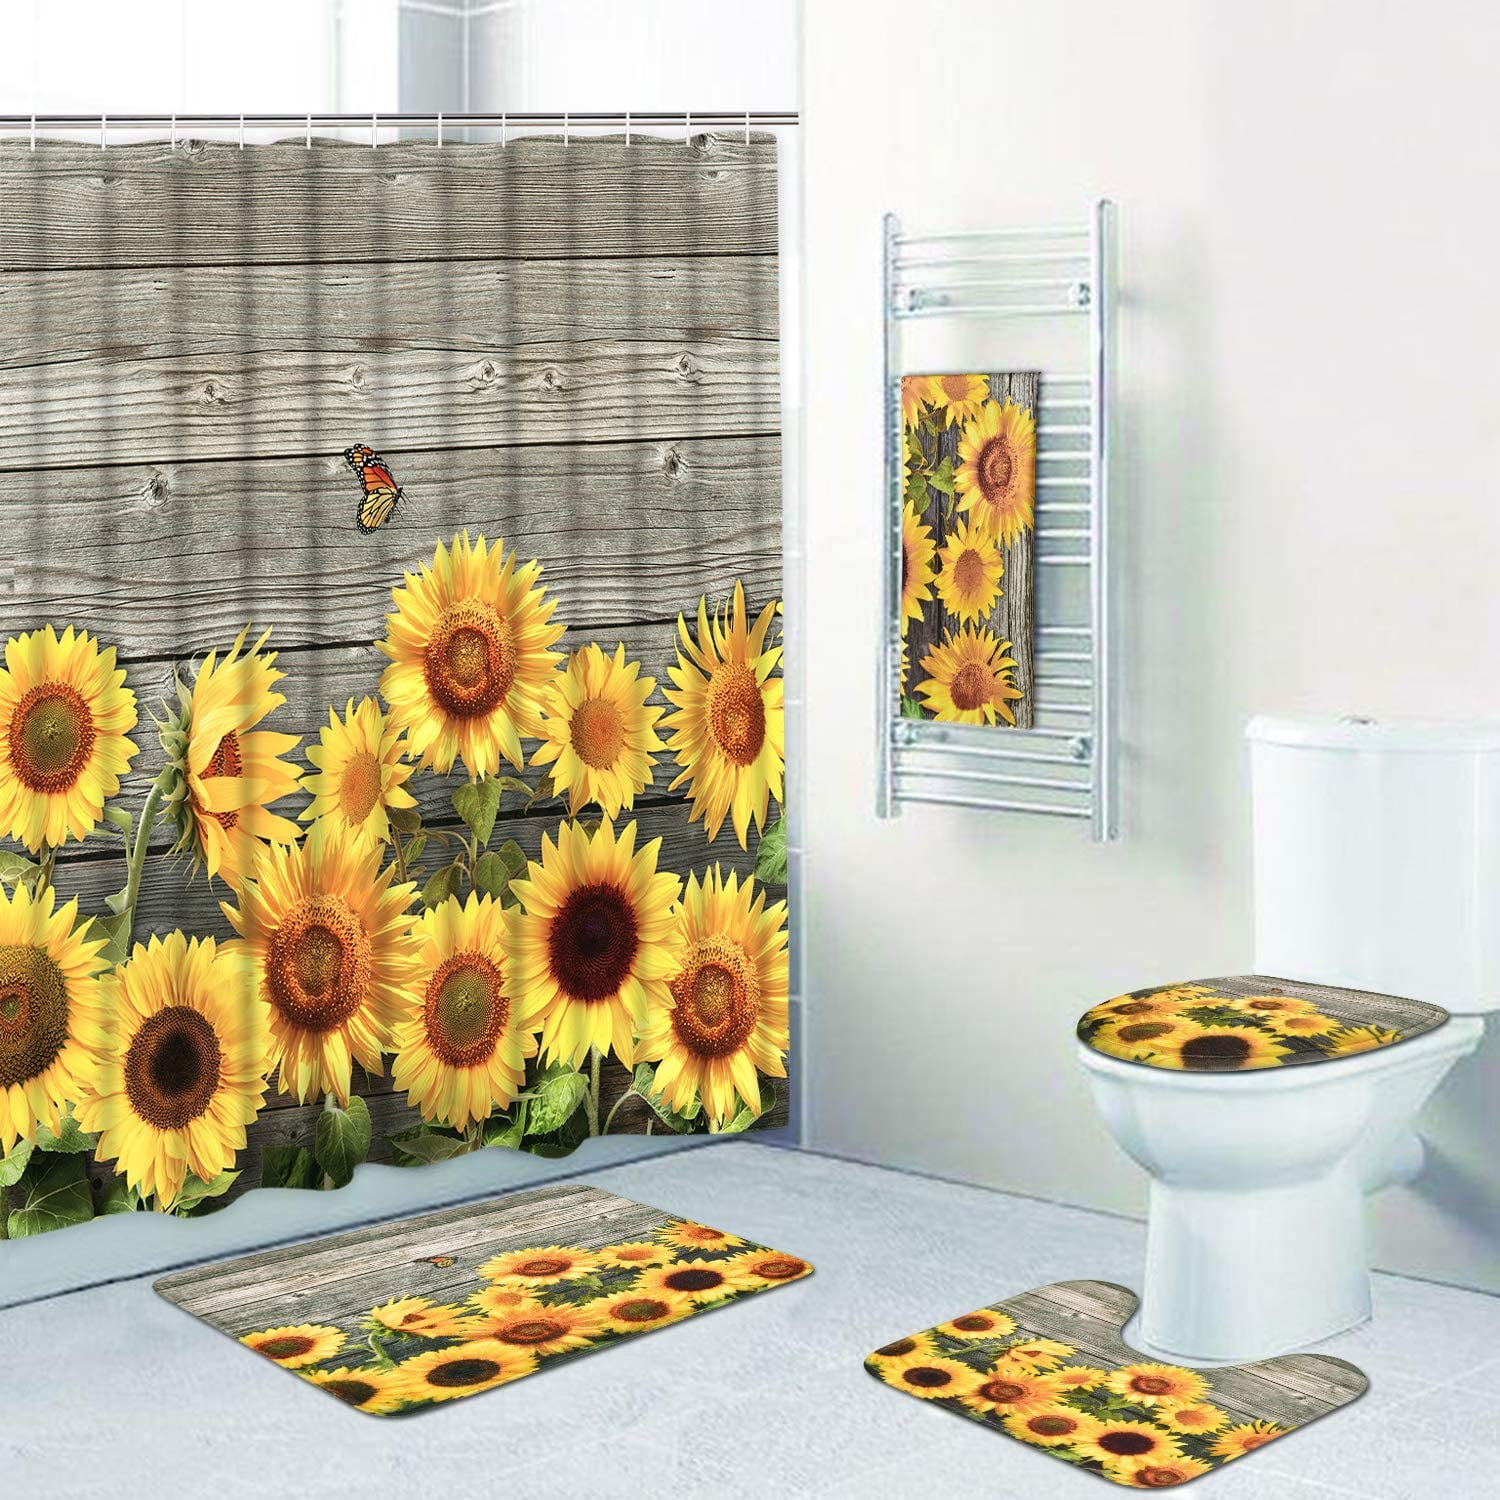 Blooming Flowers & Wood Board Shower Curtain Set Waterproof Fabric Bathroom Mat 